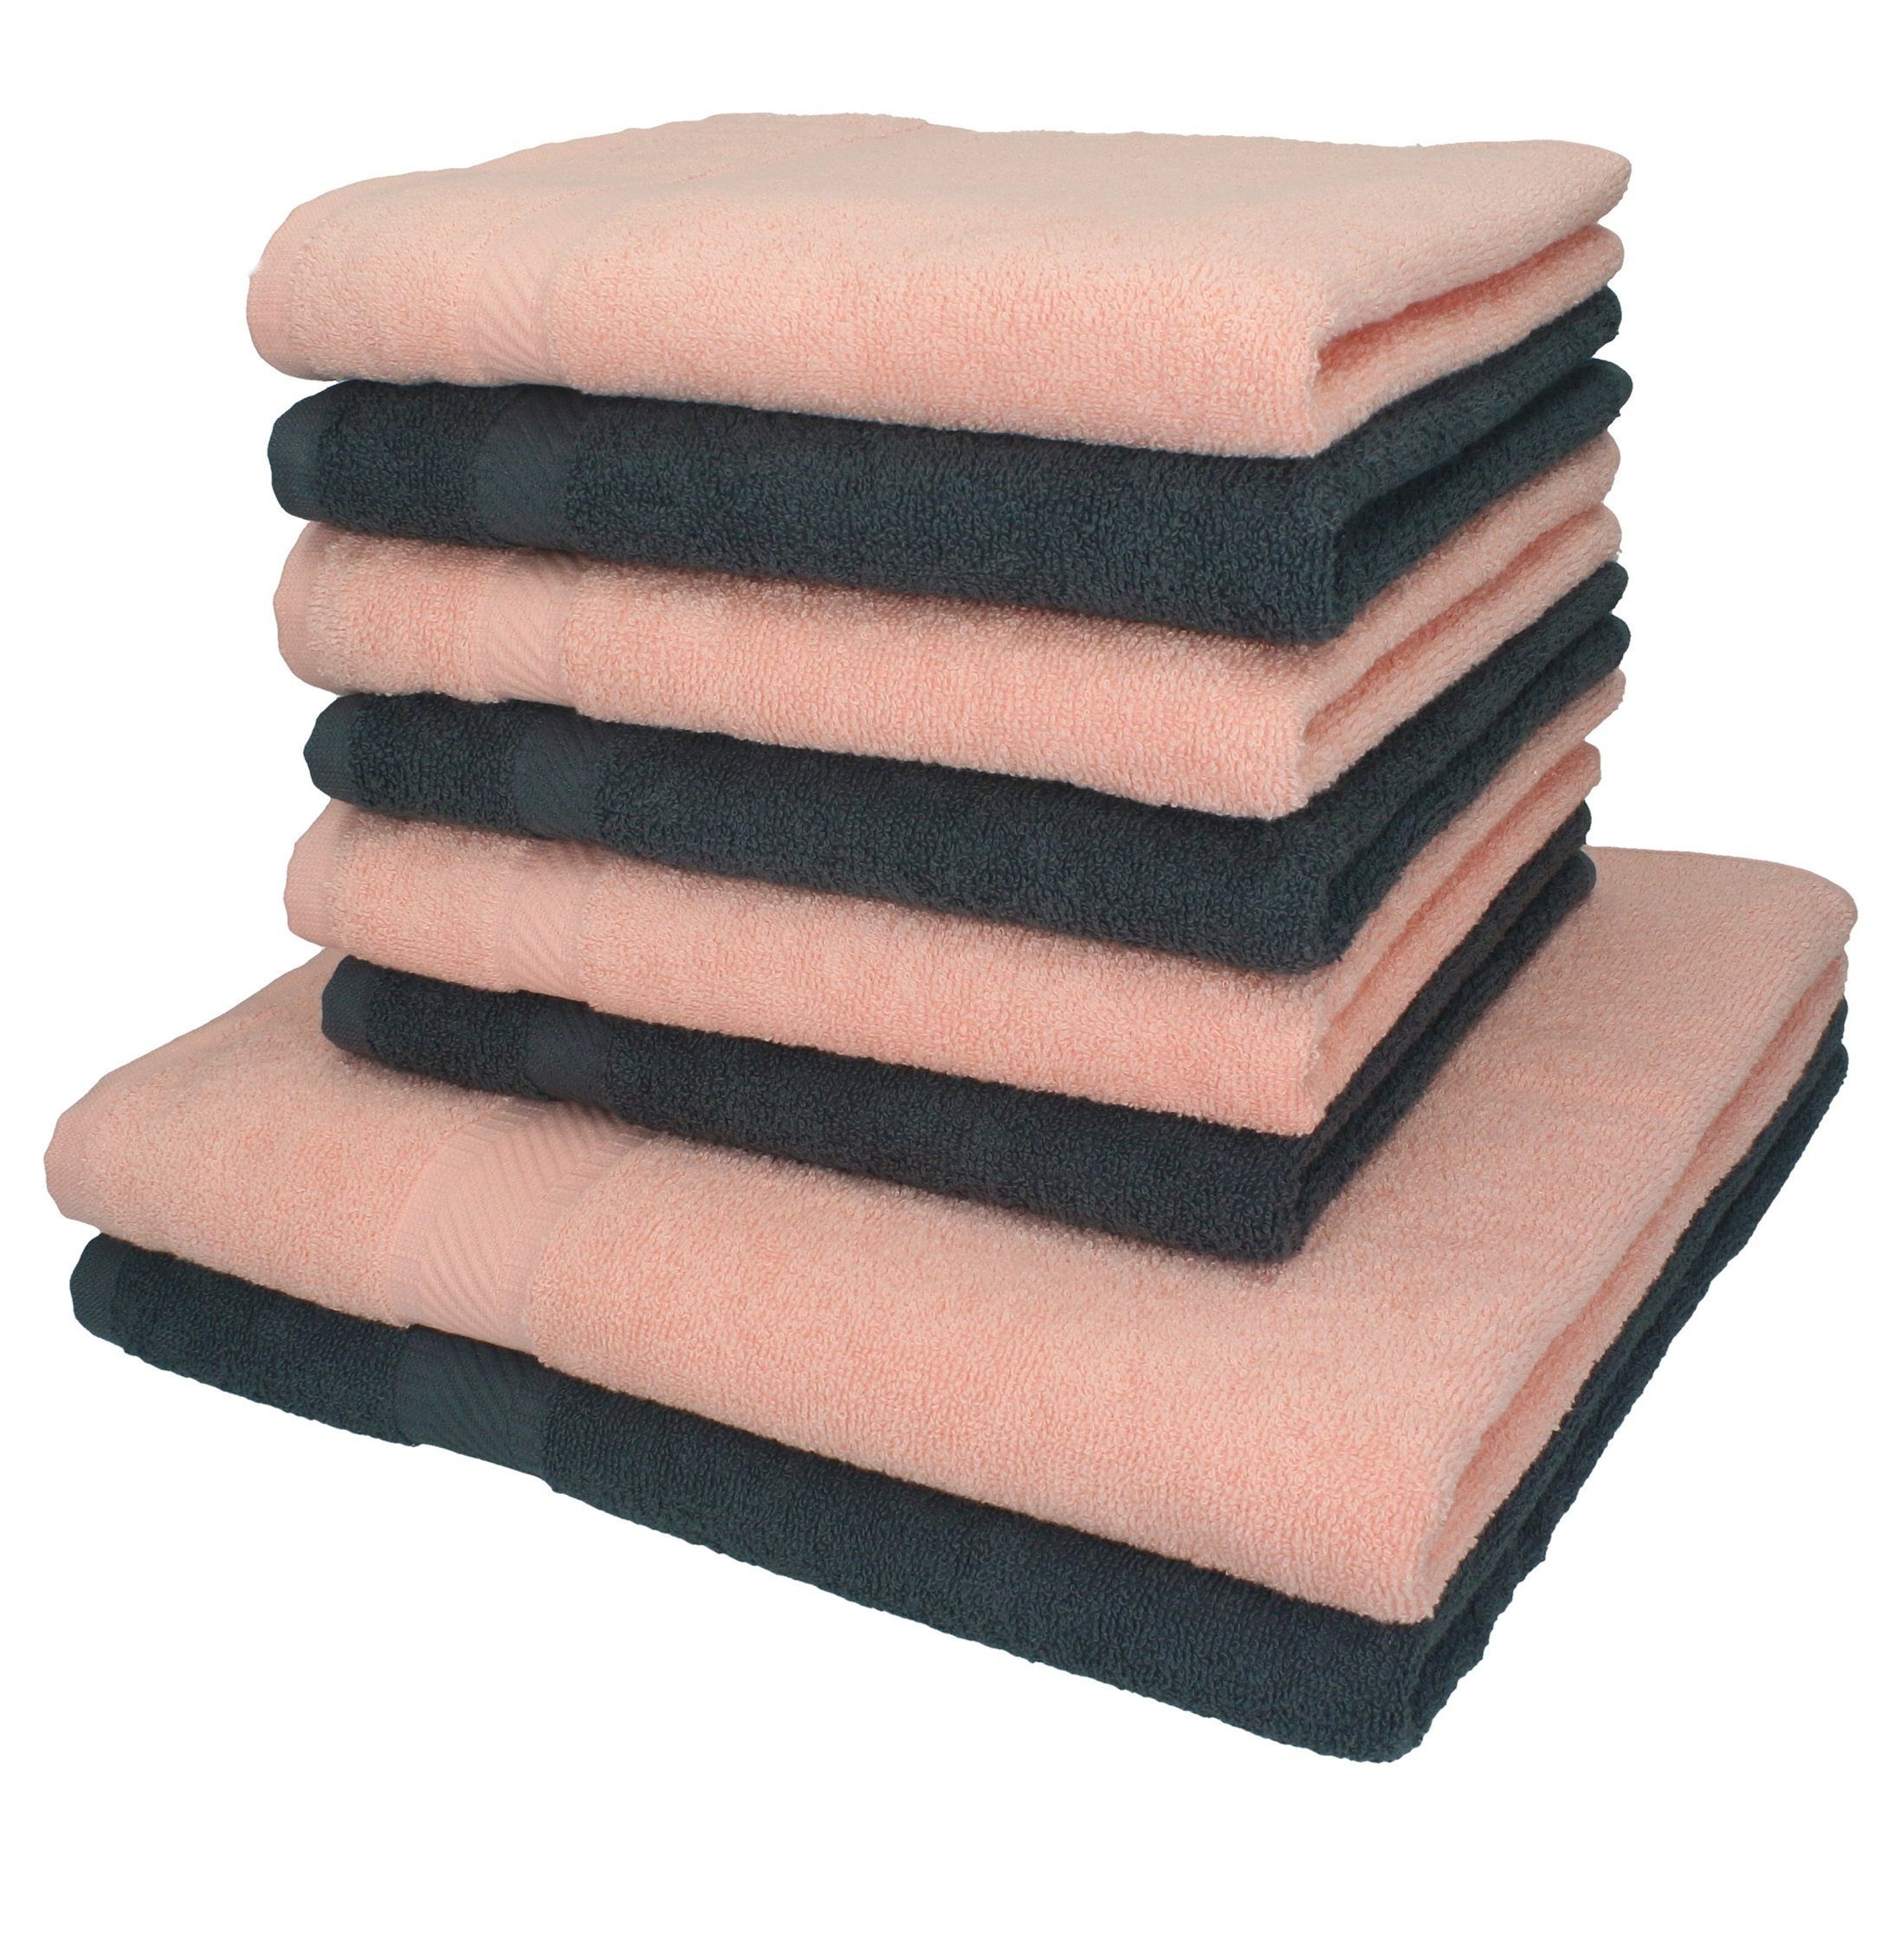 Betz Handtuch Set 8-tlg. Handtuch-Set Palermo Farbe anthrazit und apricot, 100% Baumwolle